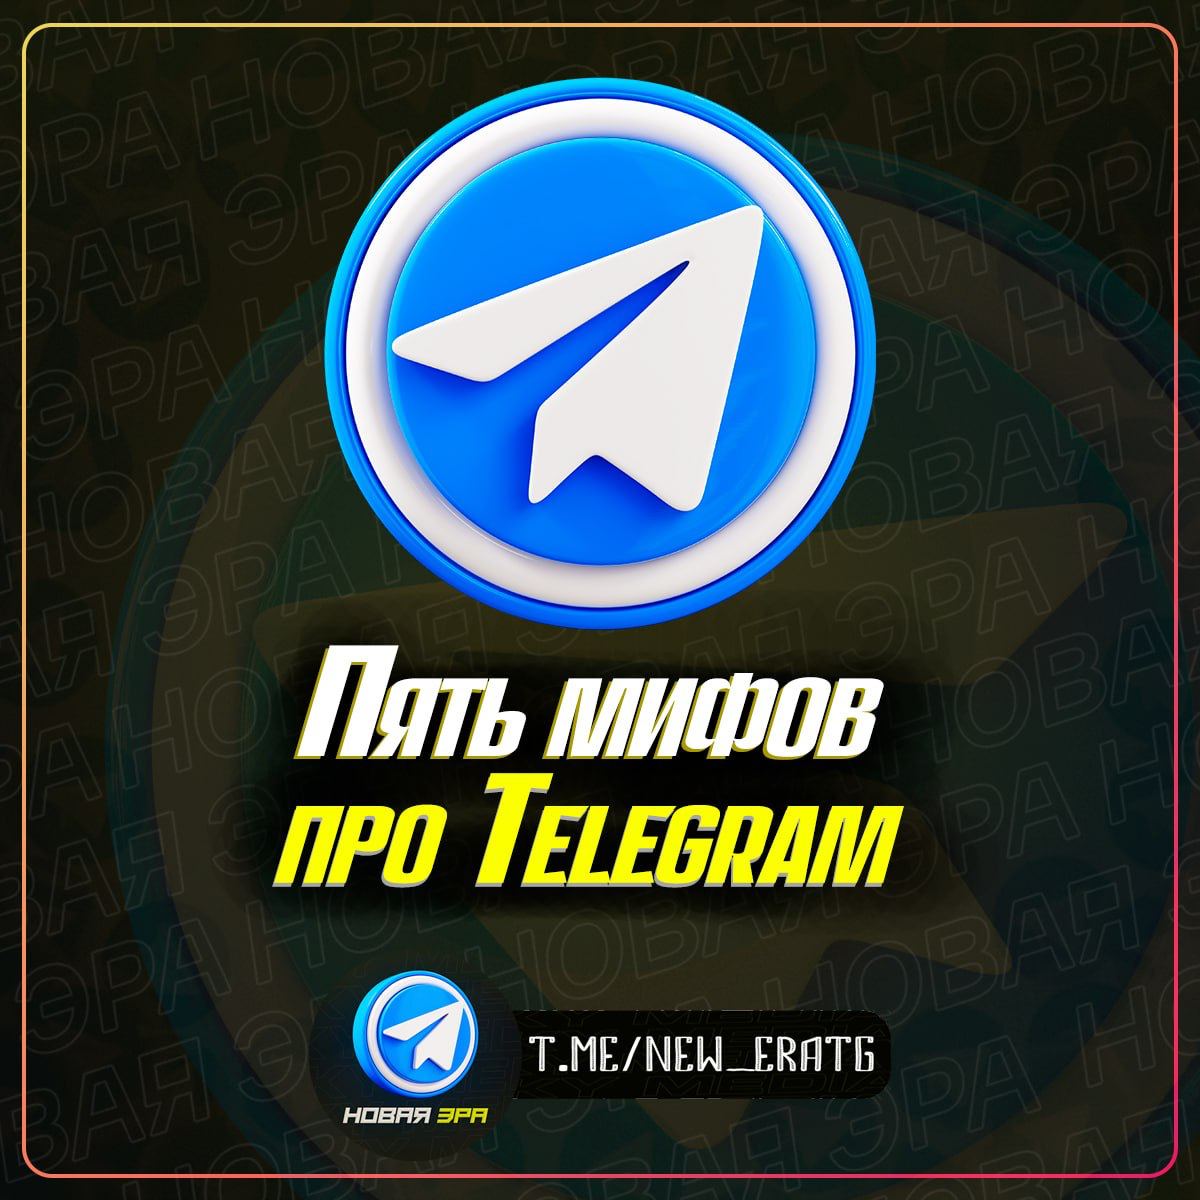 Телеграмм новая версия скачать на андроид телефон бесплатно русском бесплатно последняя фото 57